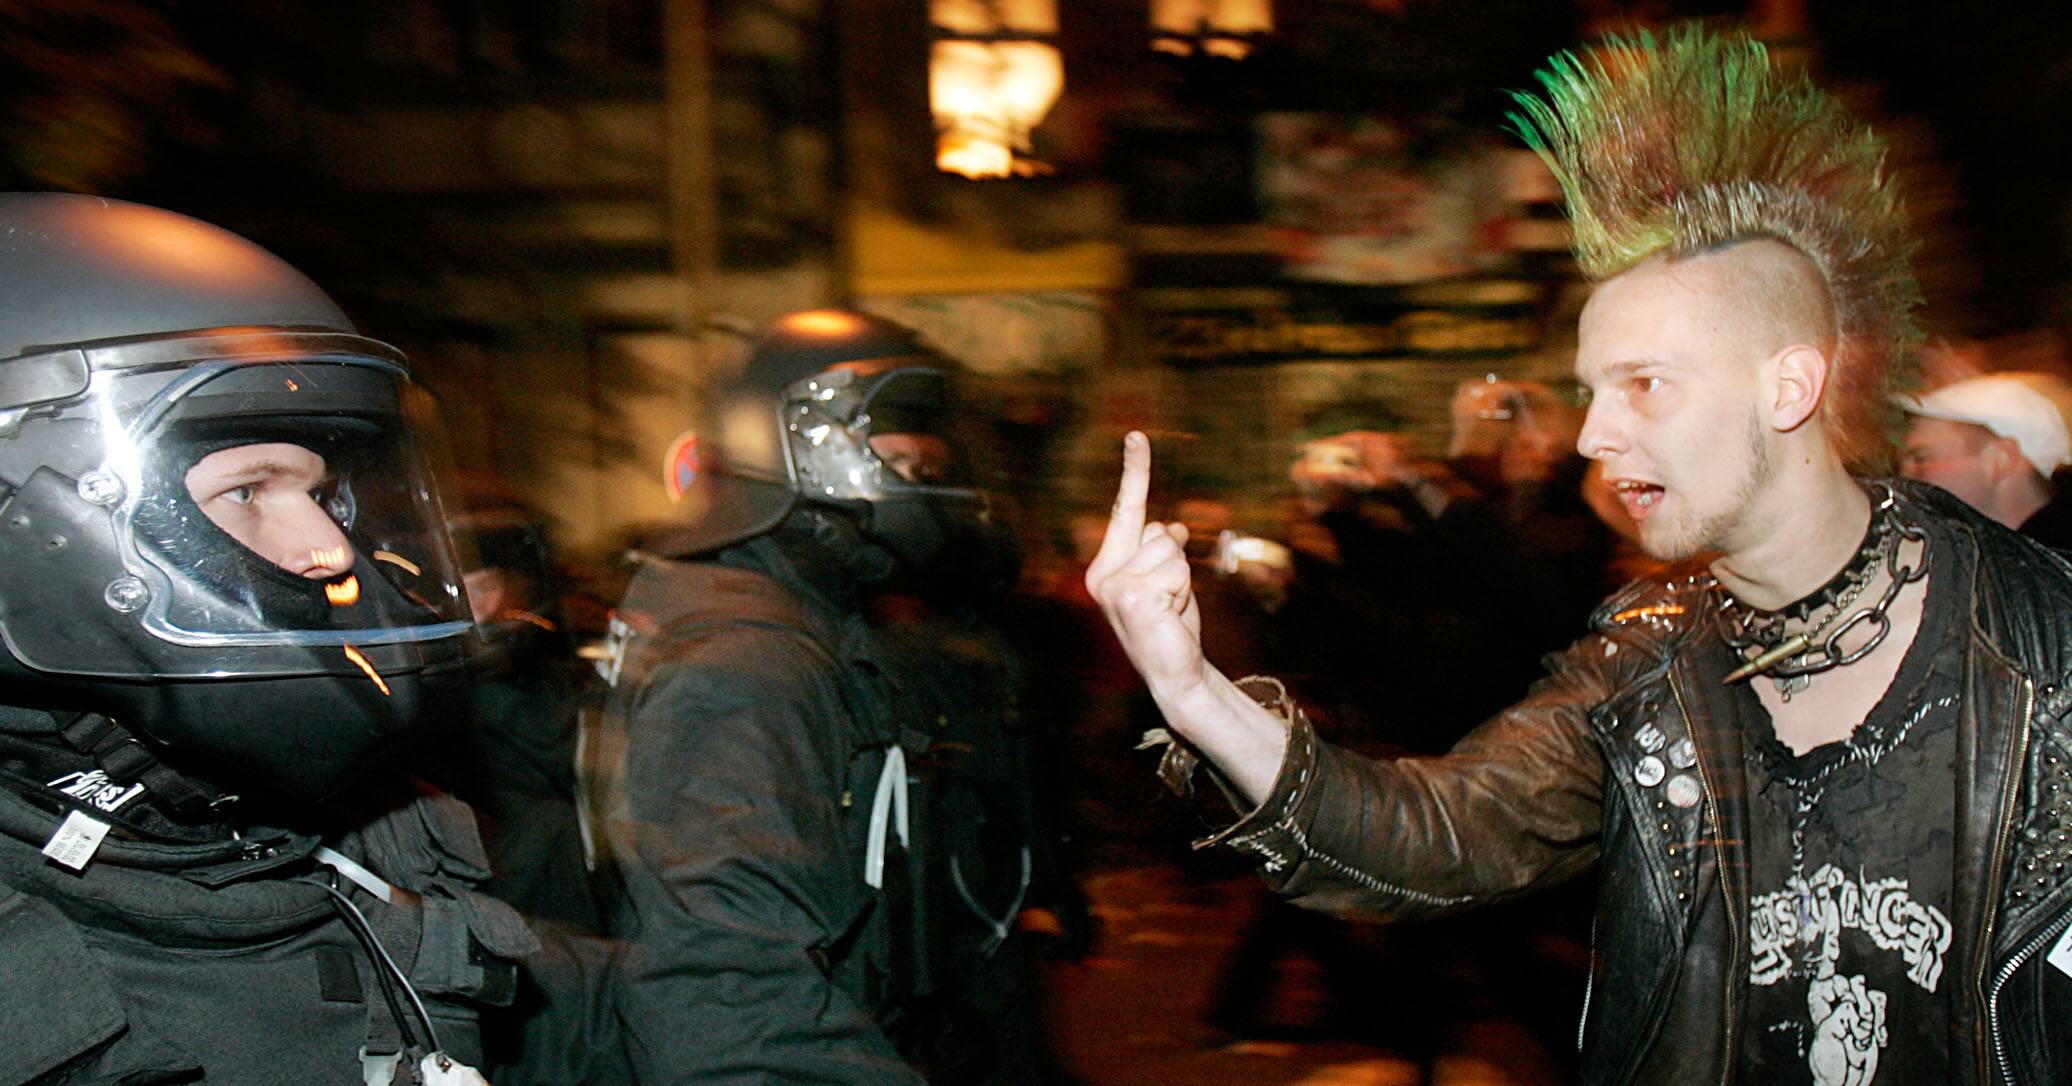 Kommunikationsversuch zwischen Punk und Polizist in der Walpurgisnacht am Boxhagener Platz in Friedrichshain, 2007. Foto: Imago/Christian Schroth